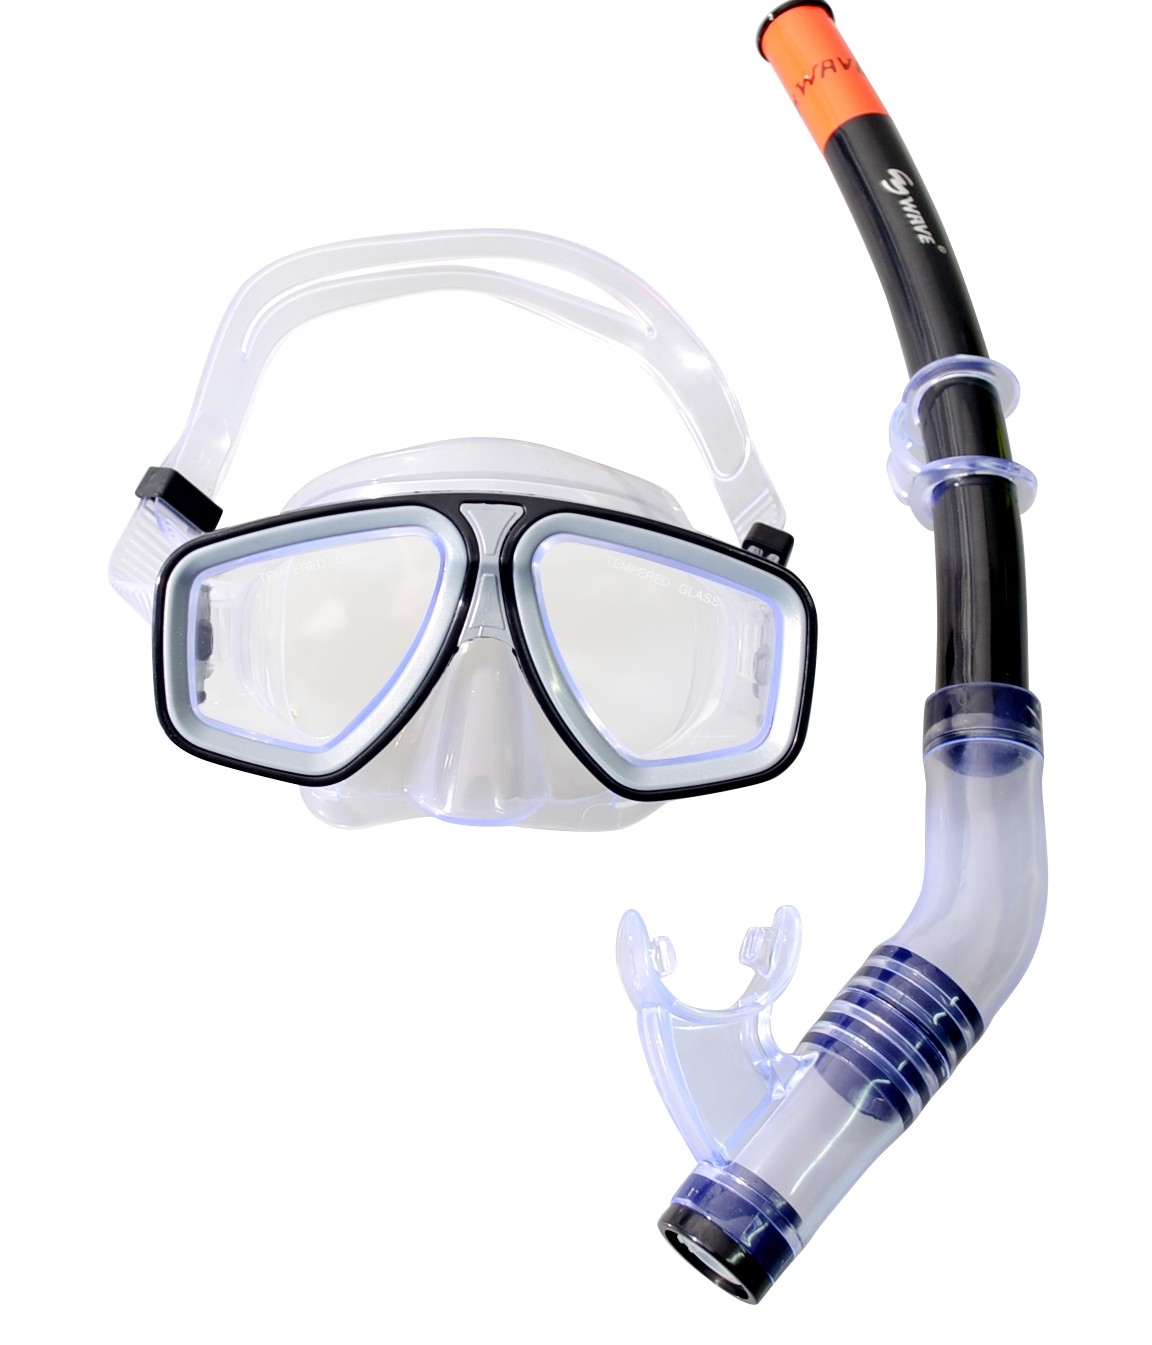 Наборы маска трубка. Mask Snorkel Set PVC маска+трубка. Маска для плавания Wave m-1328. Маска для плавания Wave m-1314. Набор для плавания Wave MS-1311s58.